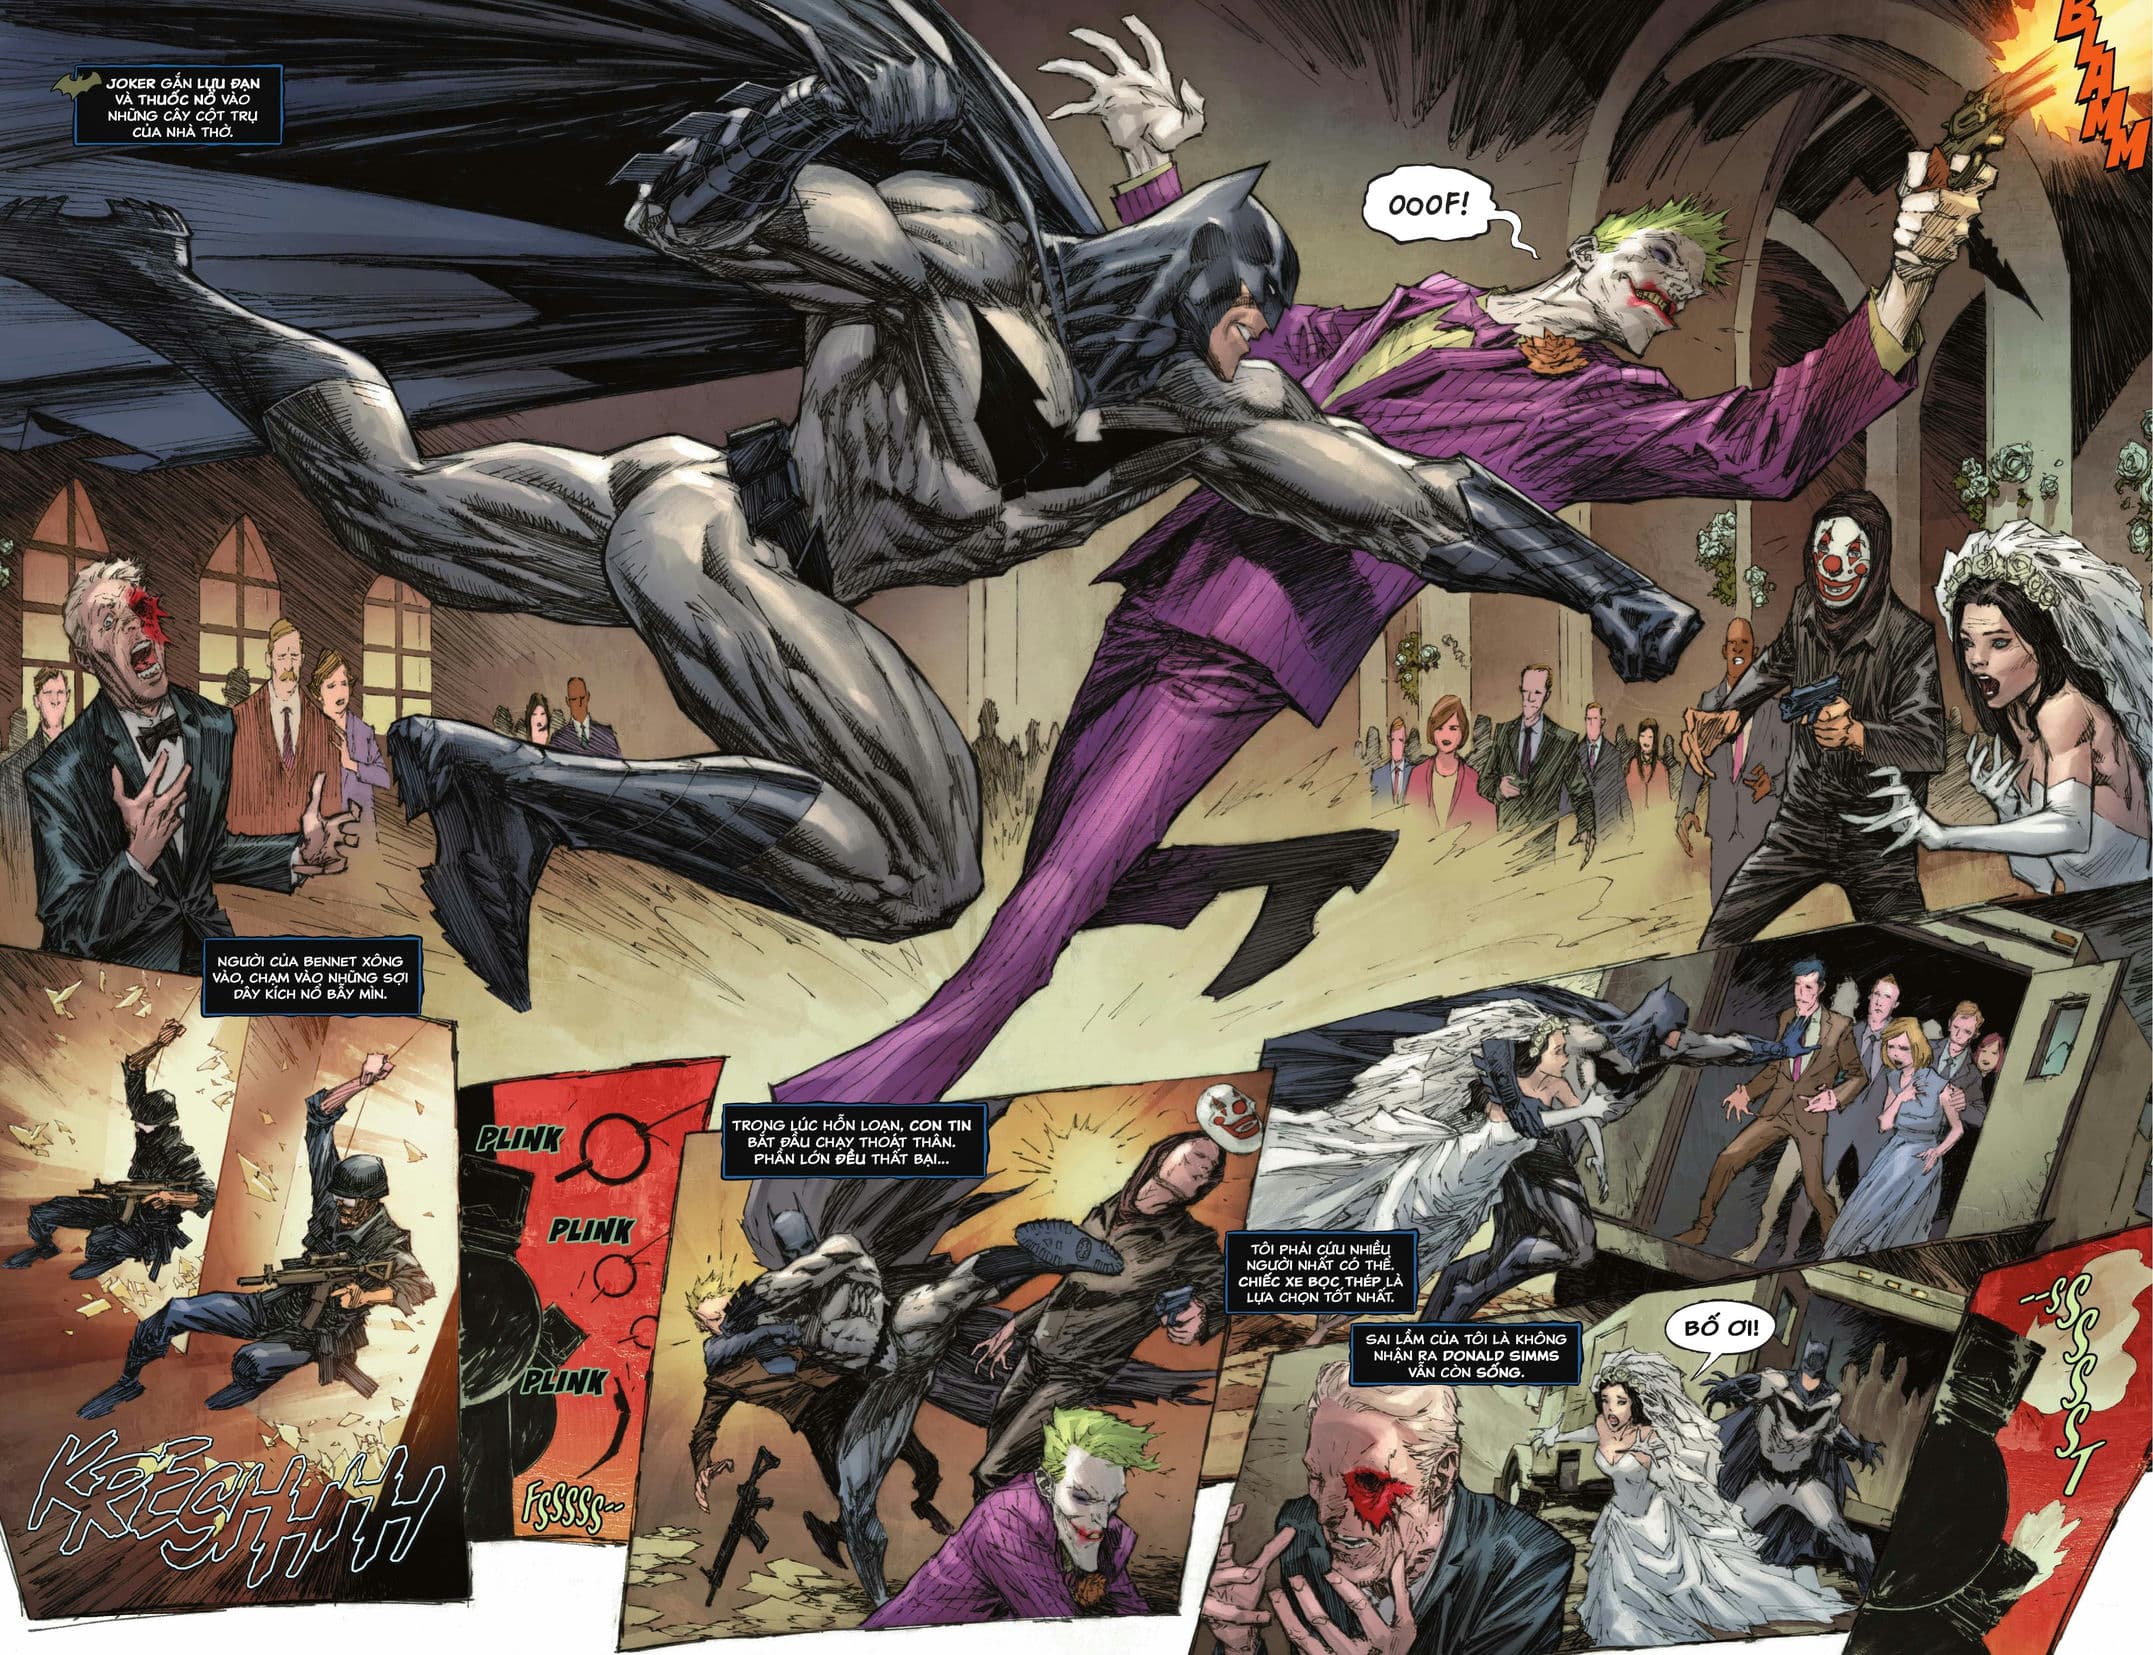 https://langgeek.net/wp-content/webpc-passthru.php?src=https://langgeek.net/wp-content/uploads/2023/04/Batman-_-The-Joker-The-Deadly-Duo-2022-005-006.jpg&nocache=1